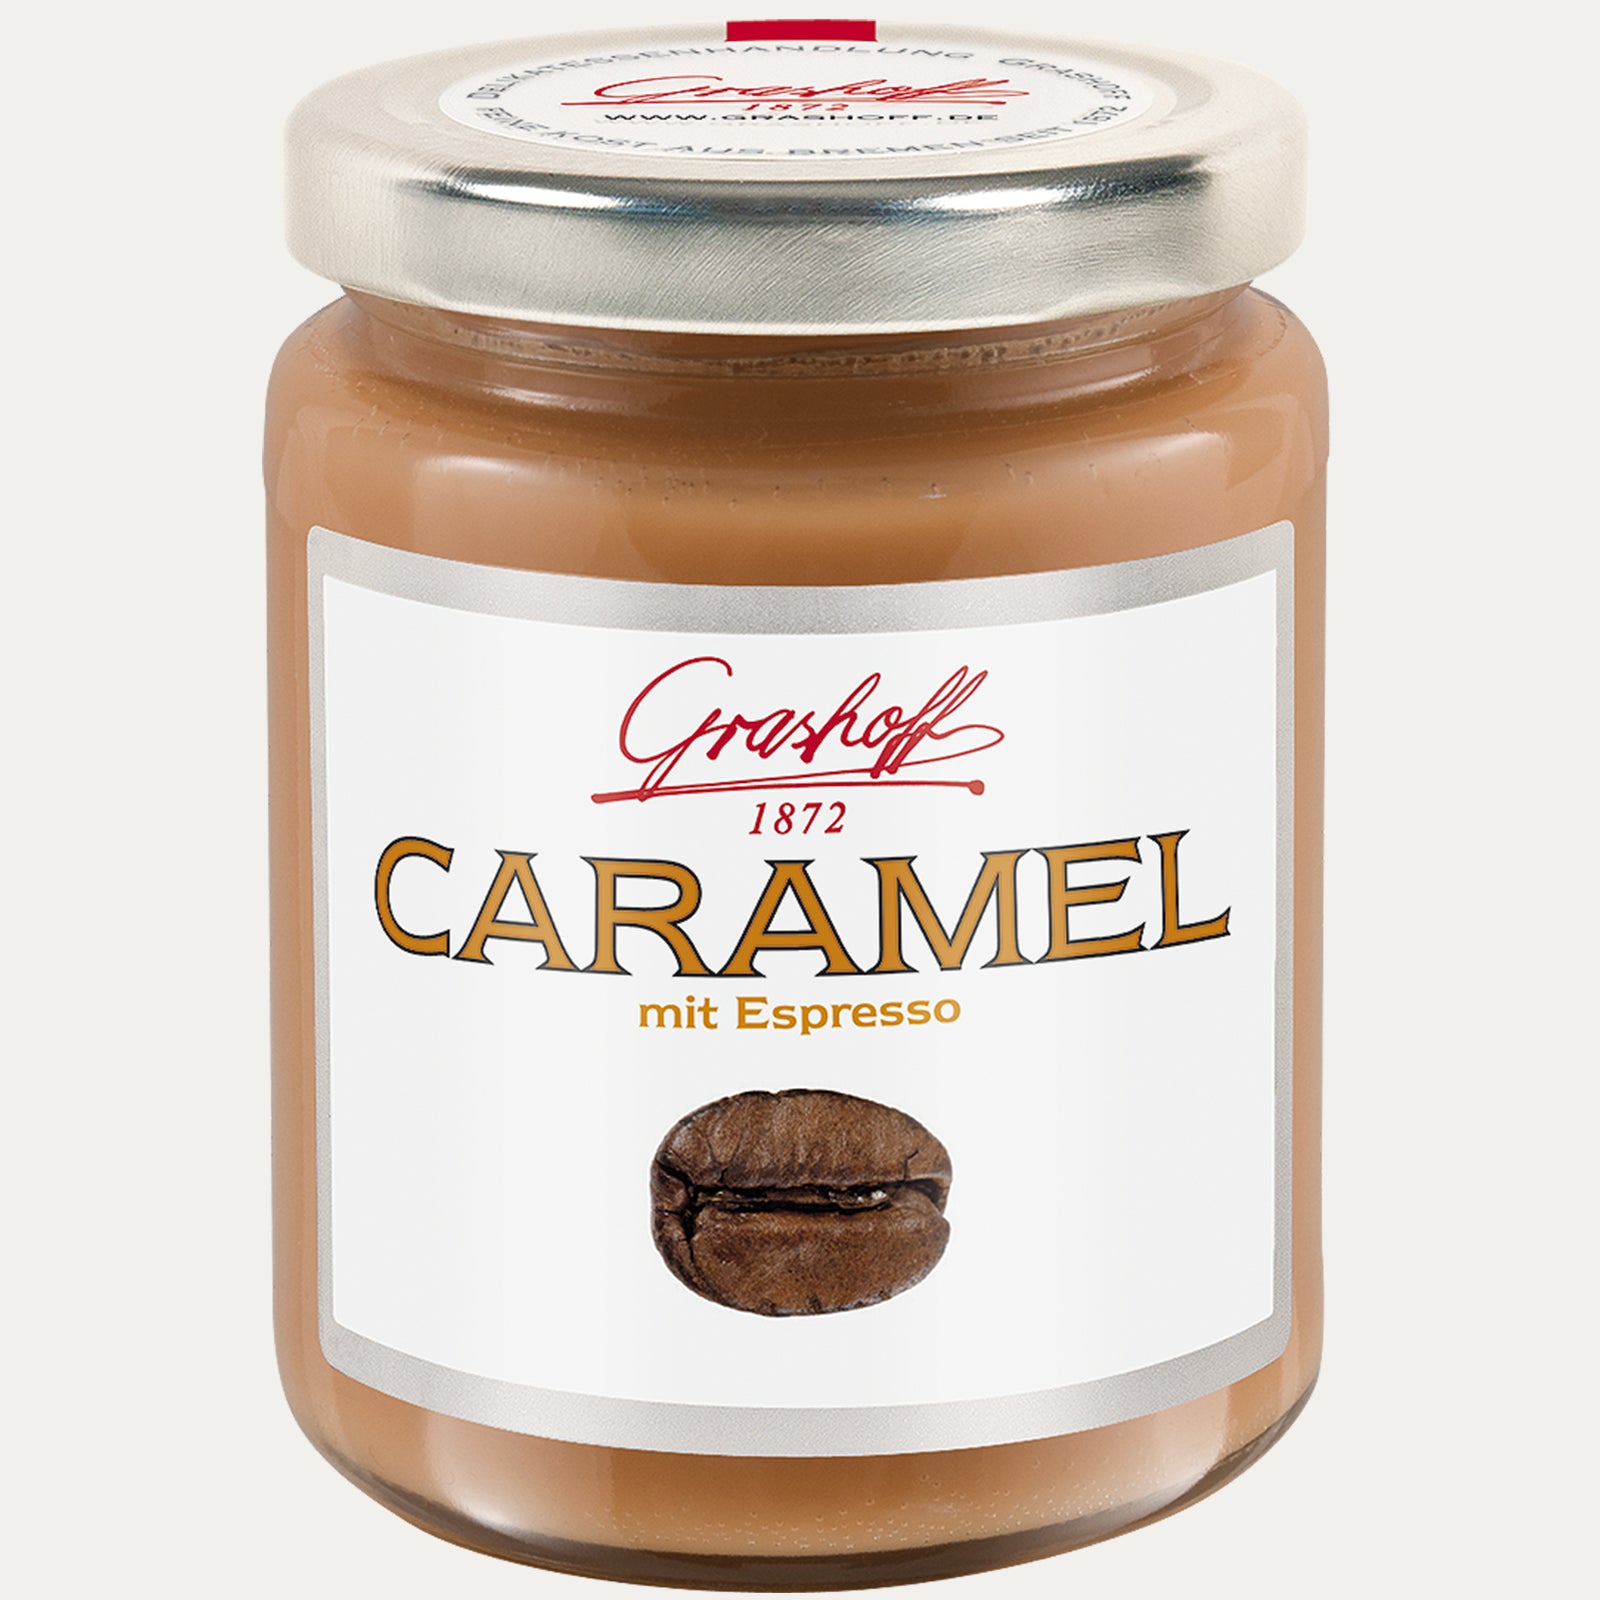 Caramel mit Espresso Creme 250g - Made in Bremen - Grashoff -